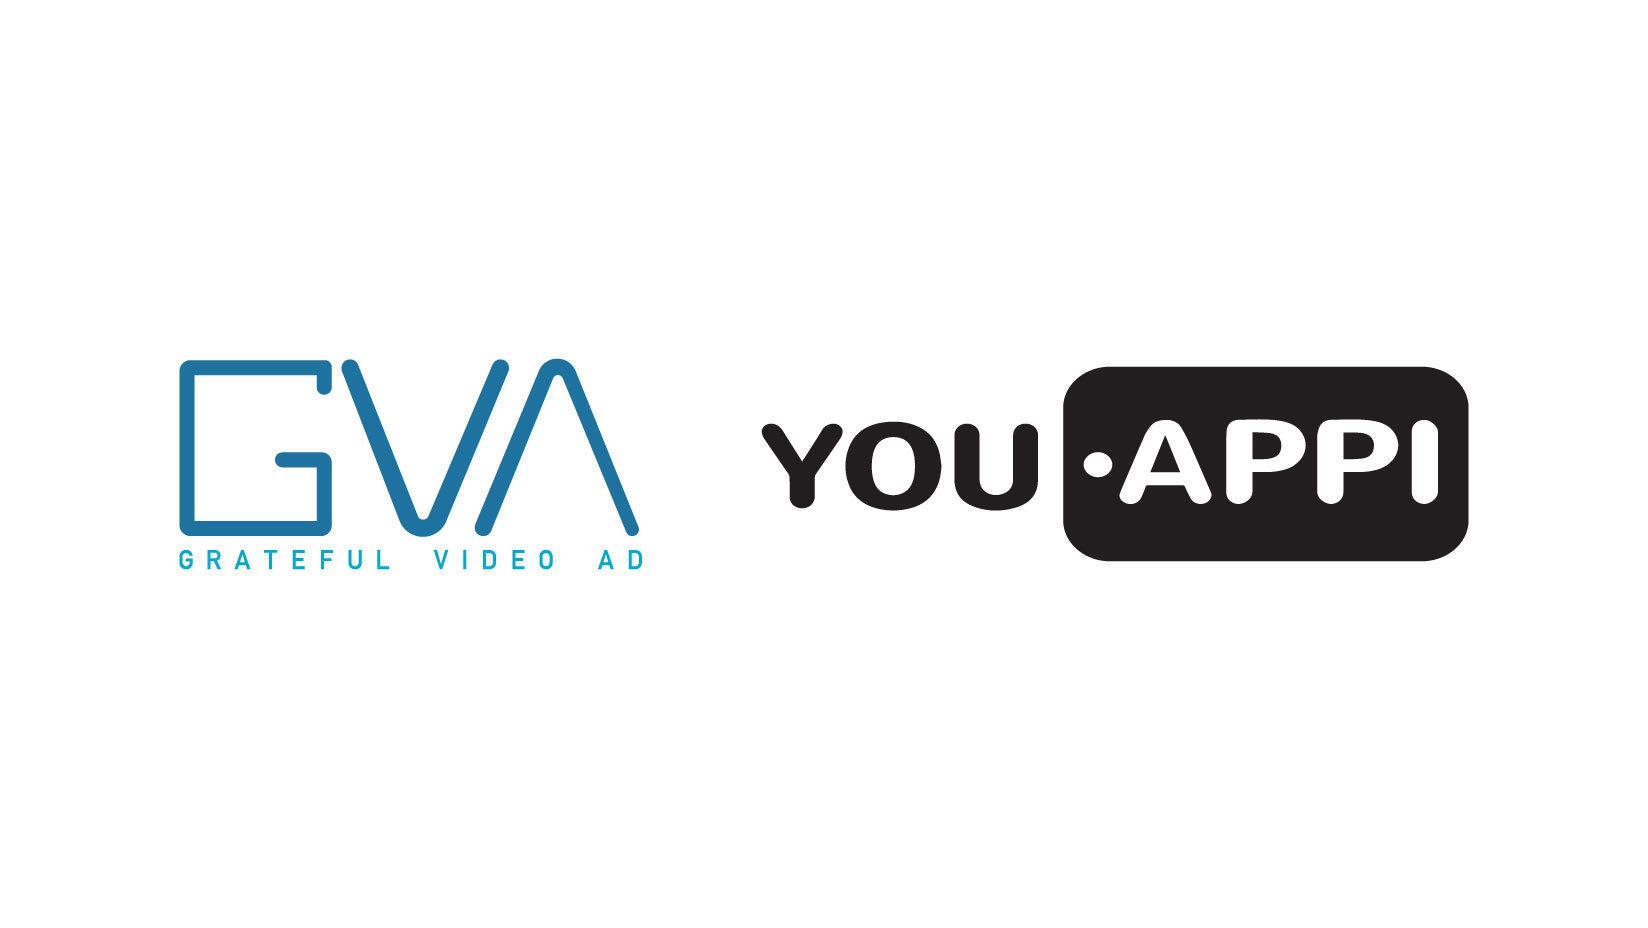 サイバーエージェント子会社のCA Wise、動画広告「Grateful Video Ad」において「YouAppiビデオ」と連携